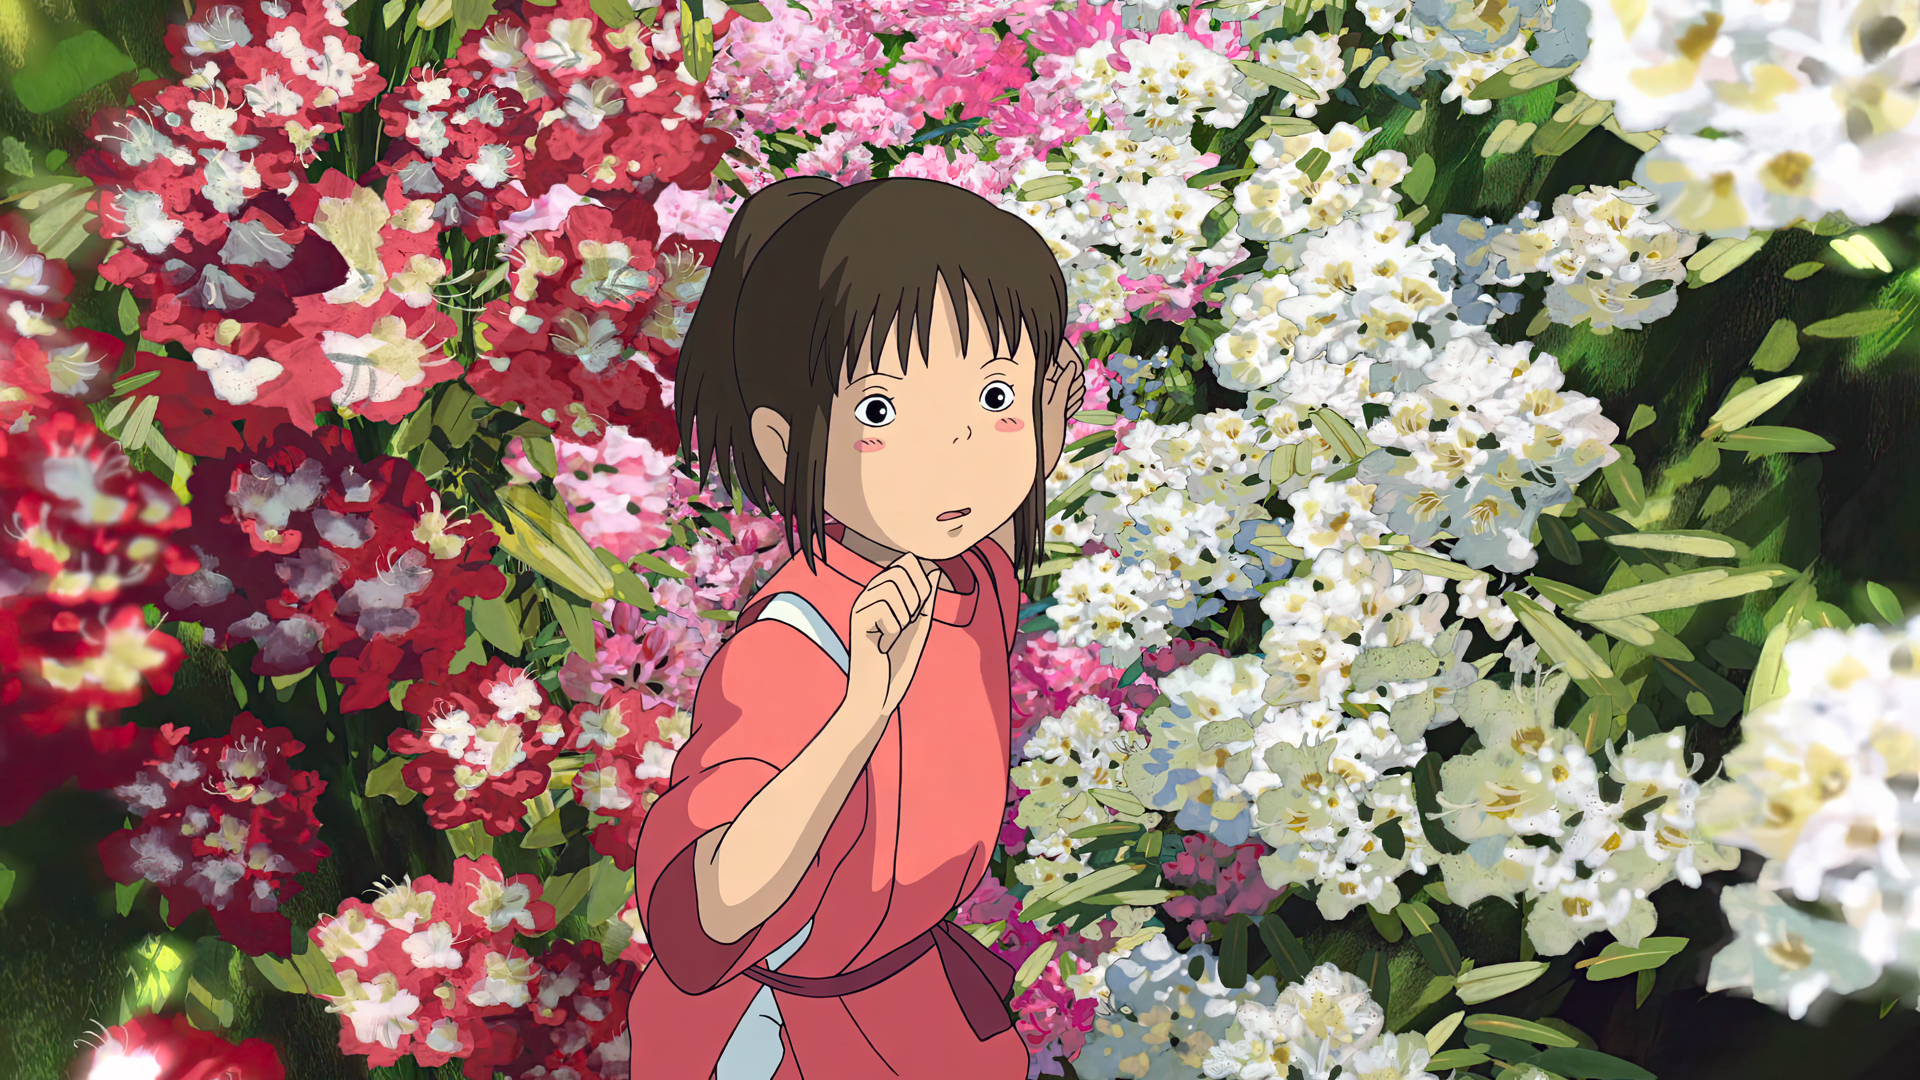 Spirited Away Sen To Chihiro Animated Movies Anime Animation Film Stills Flowers Studio Ghibli Hayao 1920x1080